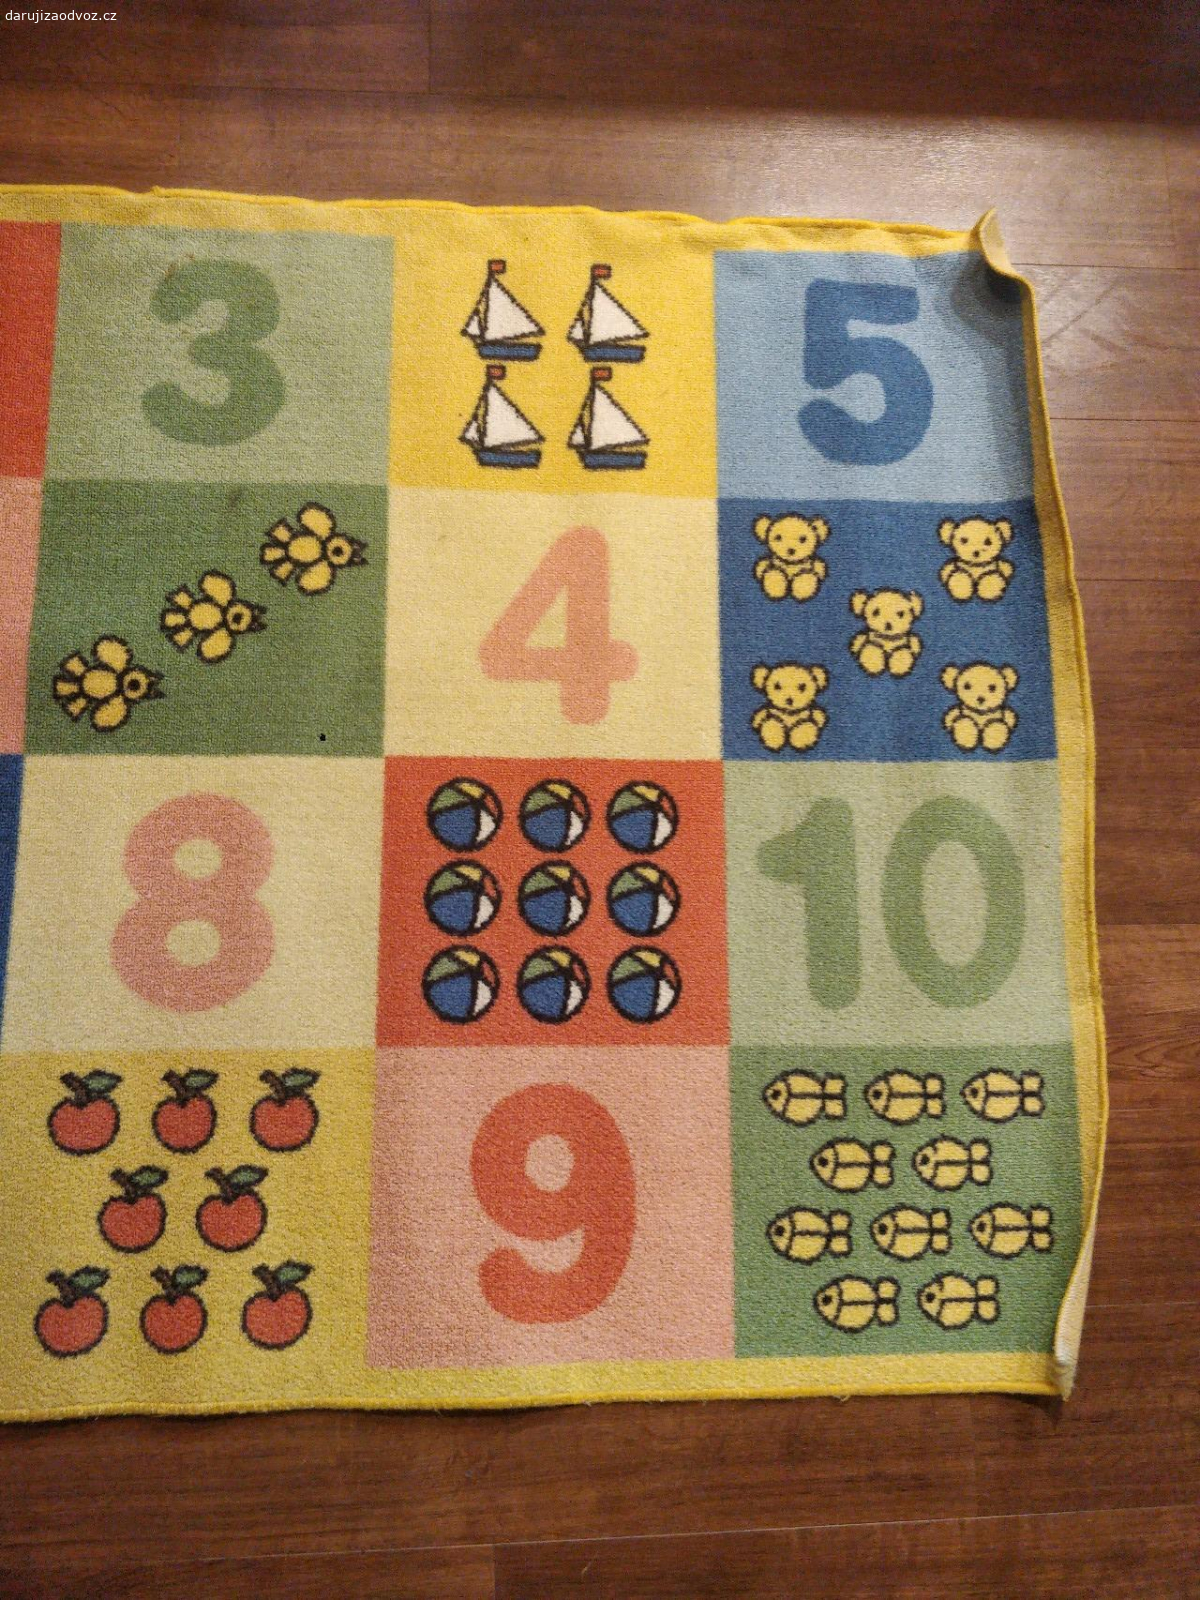 Dětský koberec. Koberec s čísly 1-10 a obrázky s odpovídajícím počtem předmětů. Rozměry 147×100 cm. Lehce znečištěný.